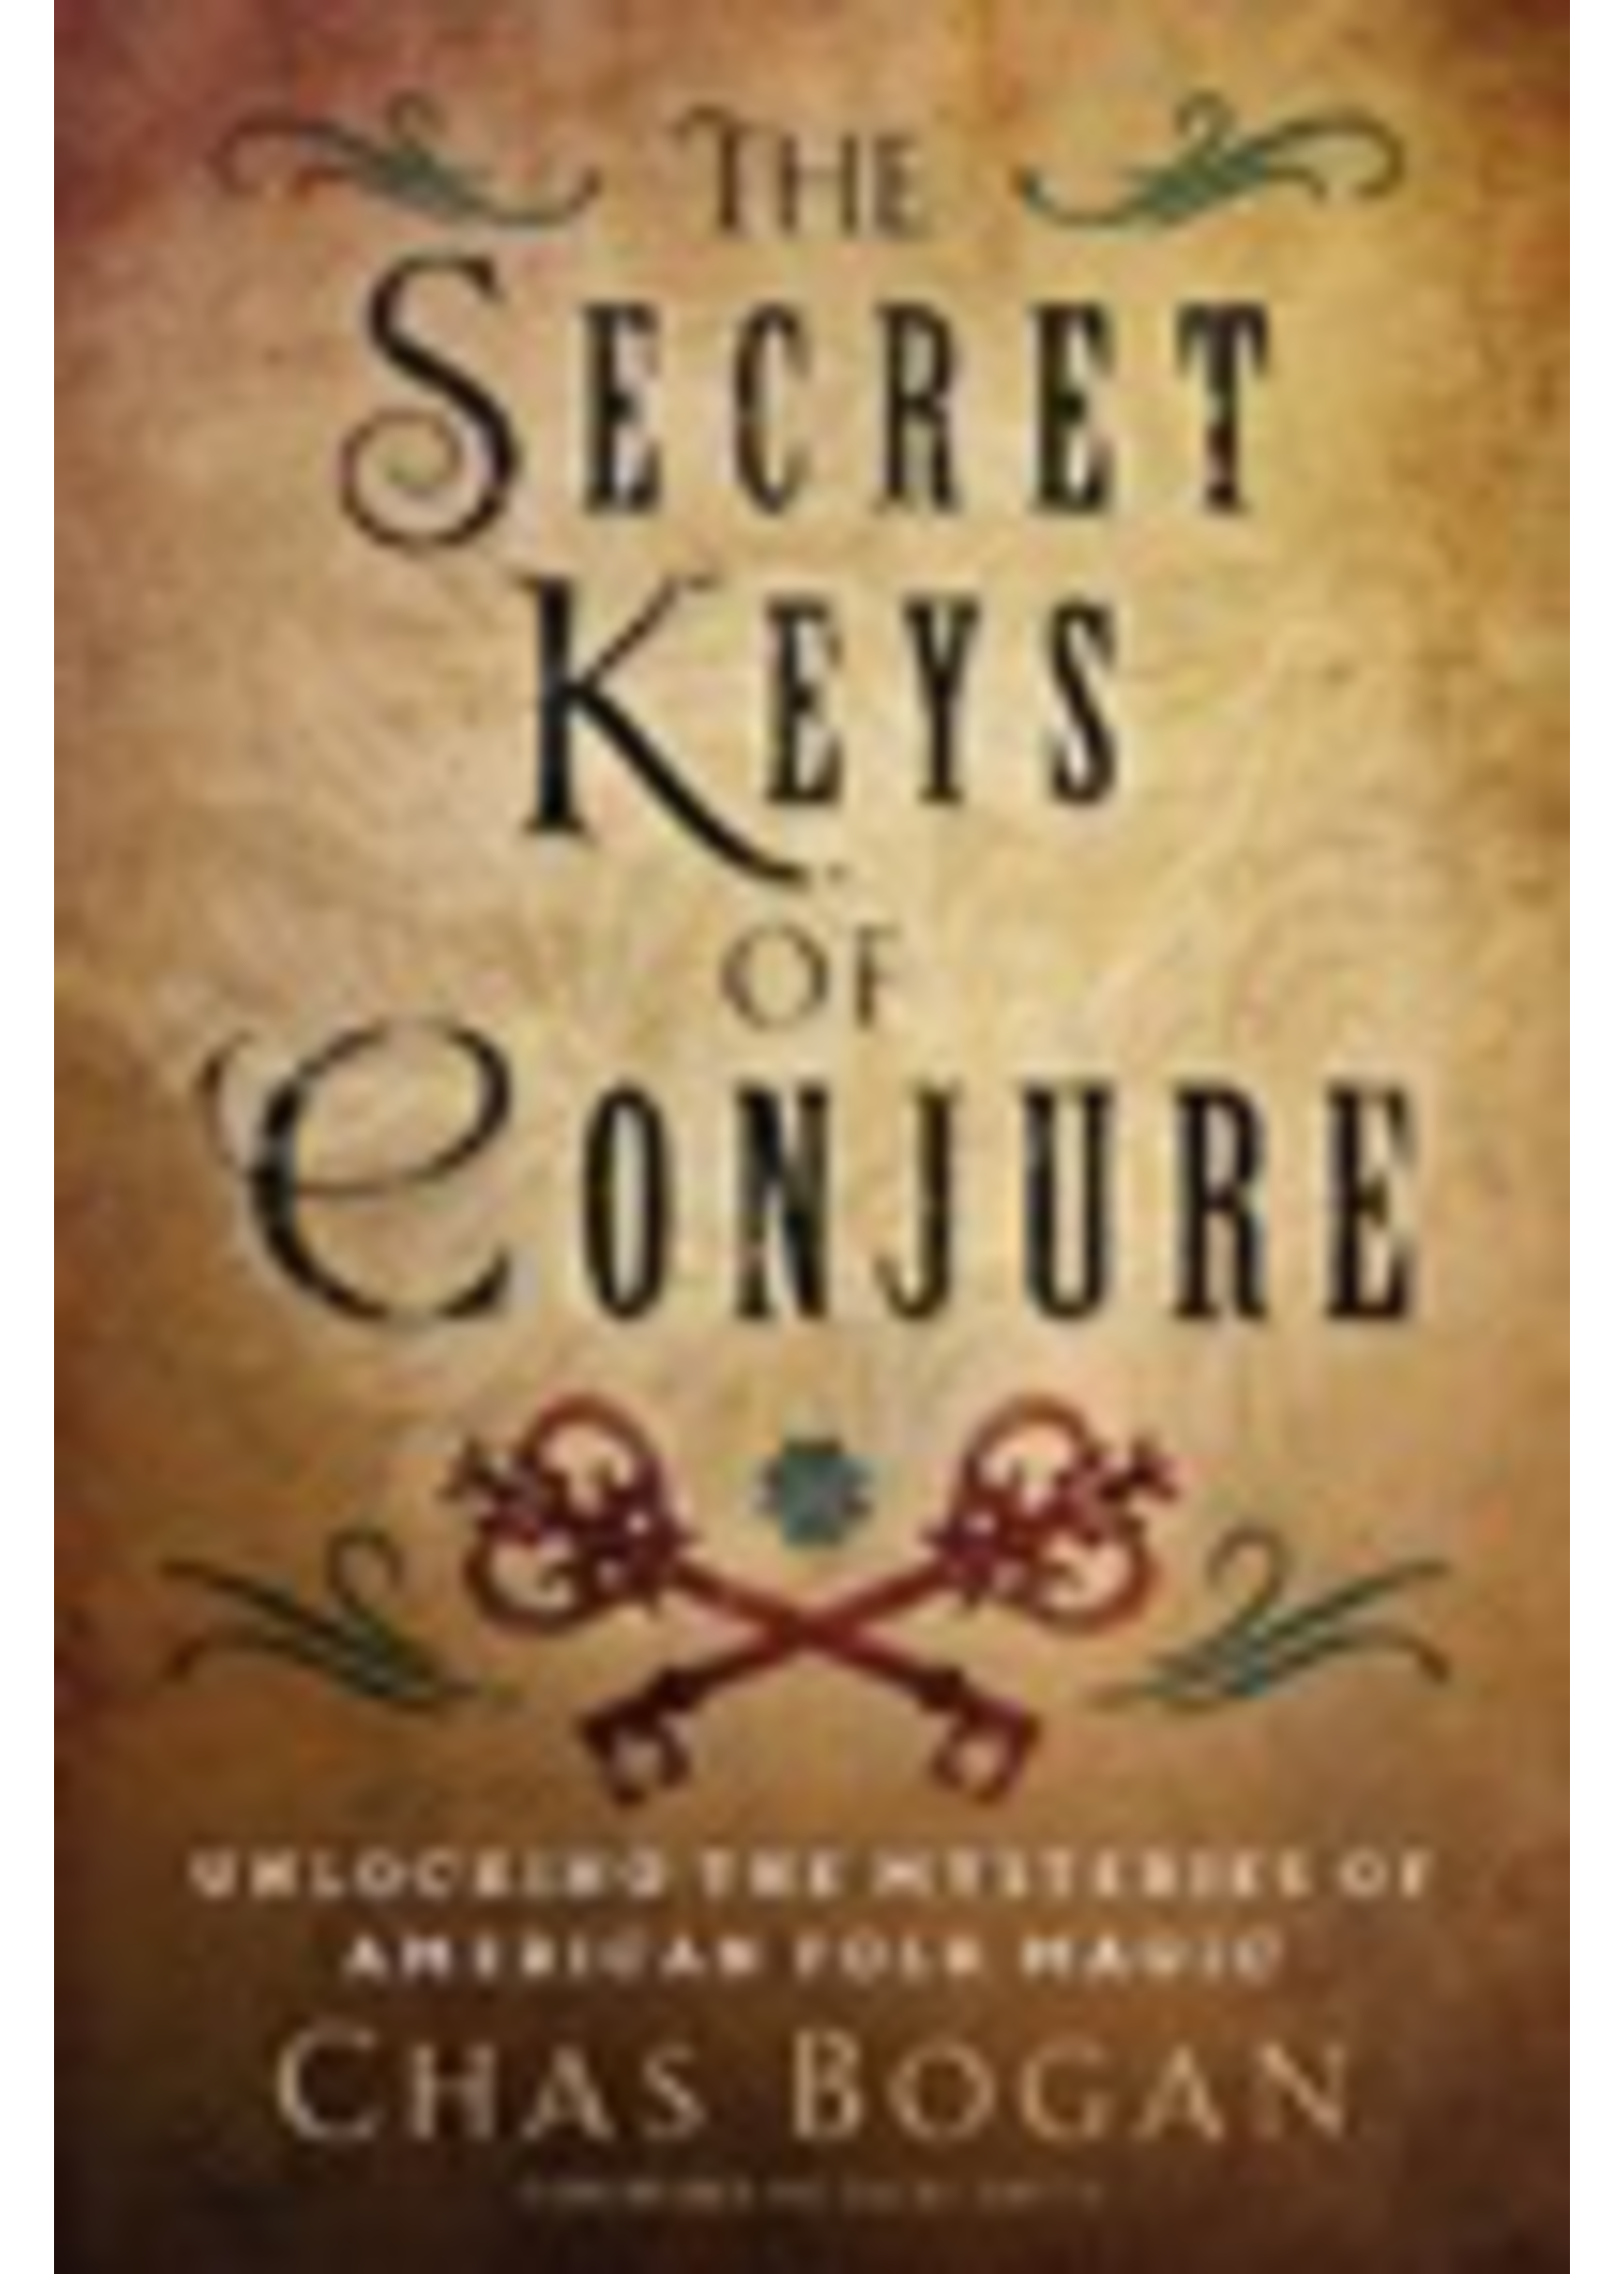 Secret Keys of Conjure